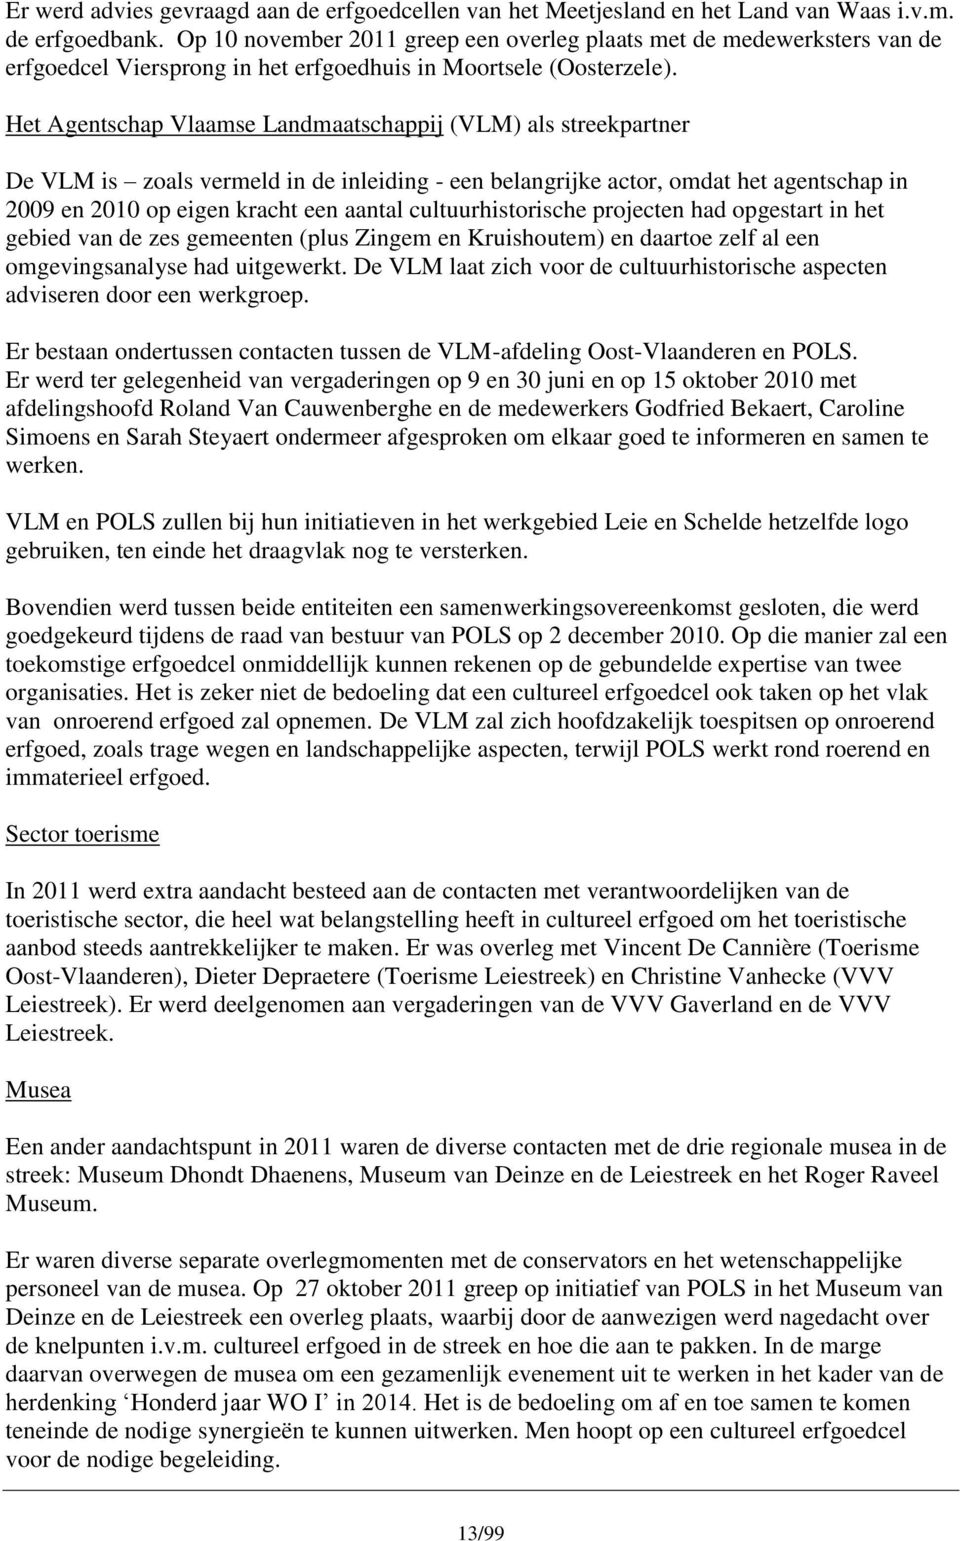 Het Agentschap Vlaamse Landmaatschappij (VLM) als streekpartner De VLM is zoals vermeld in de inleiding - een belangrijke actor, omdat het agentschap in 2009 en 2010 op eigen kracht een aantal